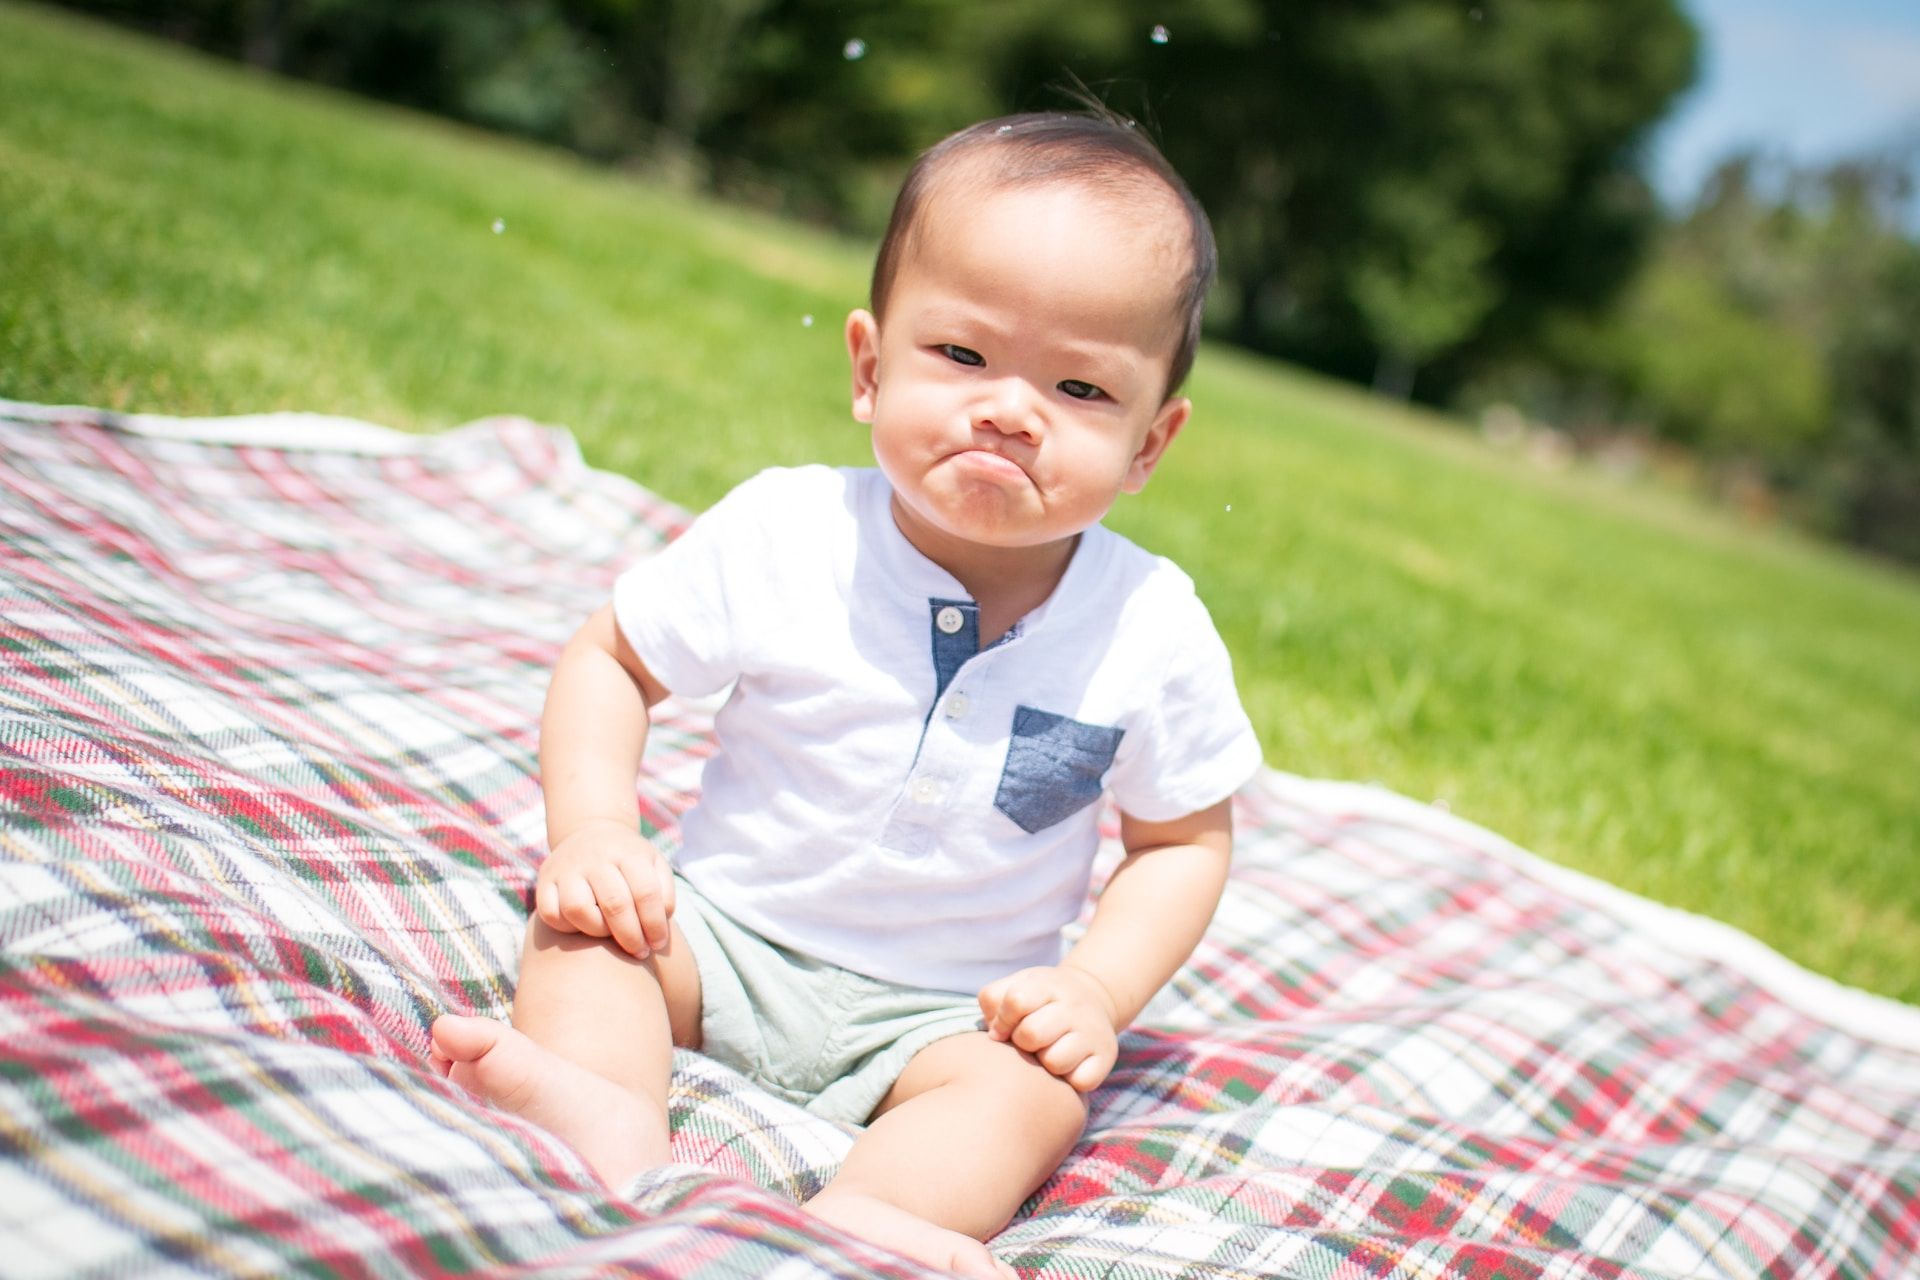 Un bébé qui a l'air en colère, assis sur une nappe de pique-nique dans un parc - Photo by Ryan Franco on https://unsplash.com/fr/photos/photographie-selective-de-mise-au-point-dun-enfant-en-bas-age-au-visage-grincheux-assis-sur-un-coussin-a-carreaux-prise-pendant-la-journee-XECZHb6NoFo